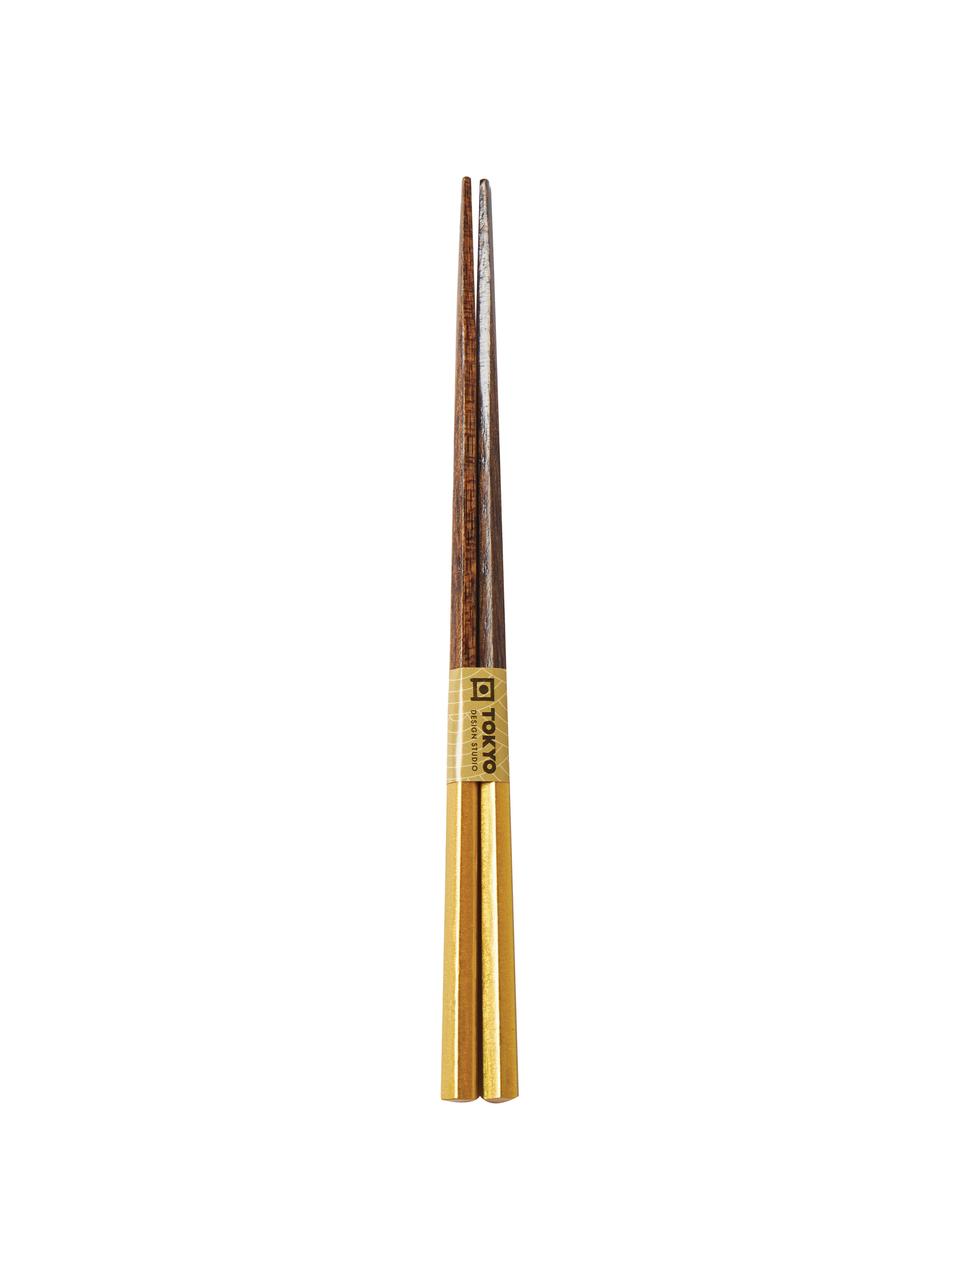 Drevené paličky Ereganto, 5 párov, Drevo, Hnedá, zlatá, D 23 cm